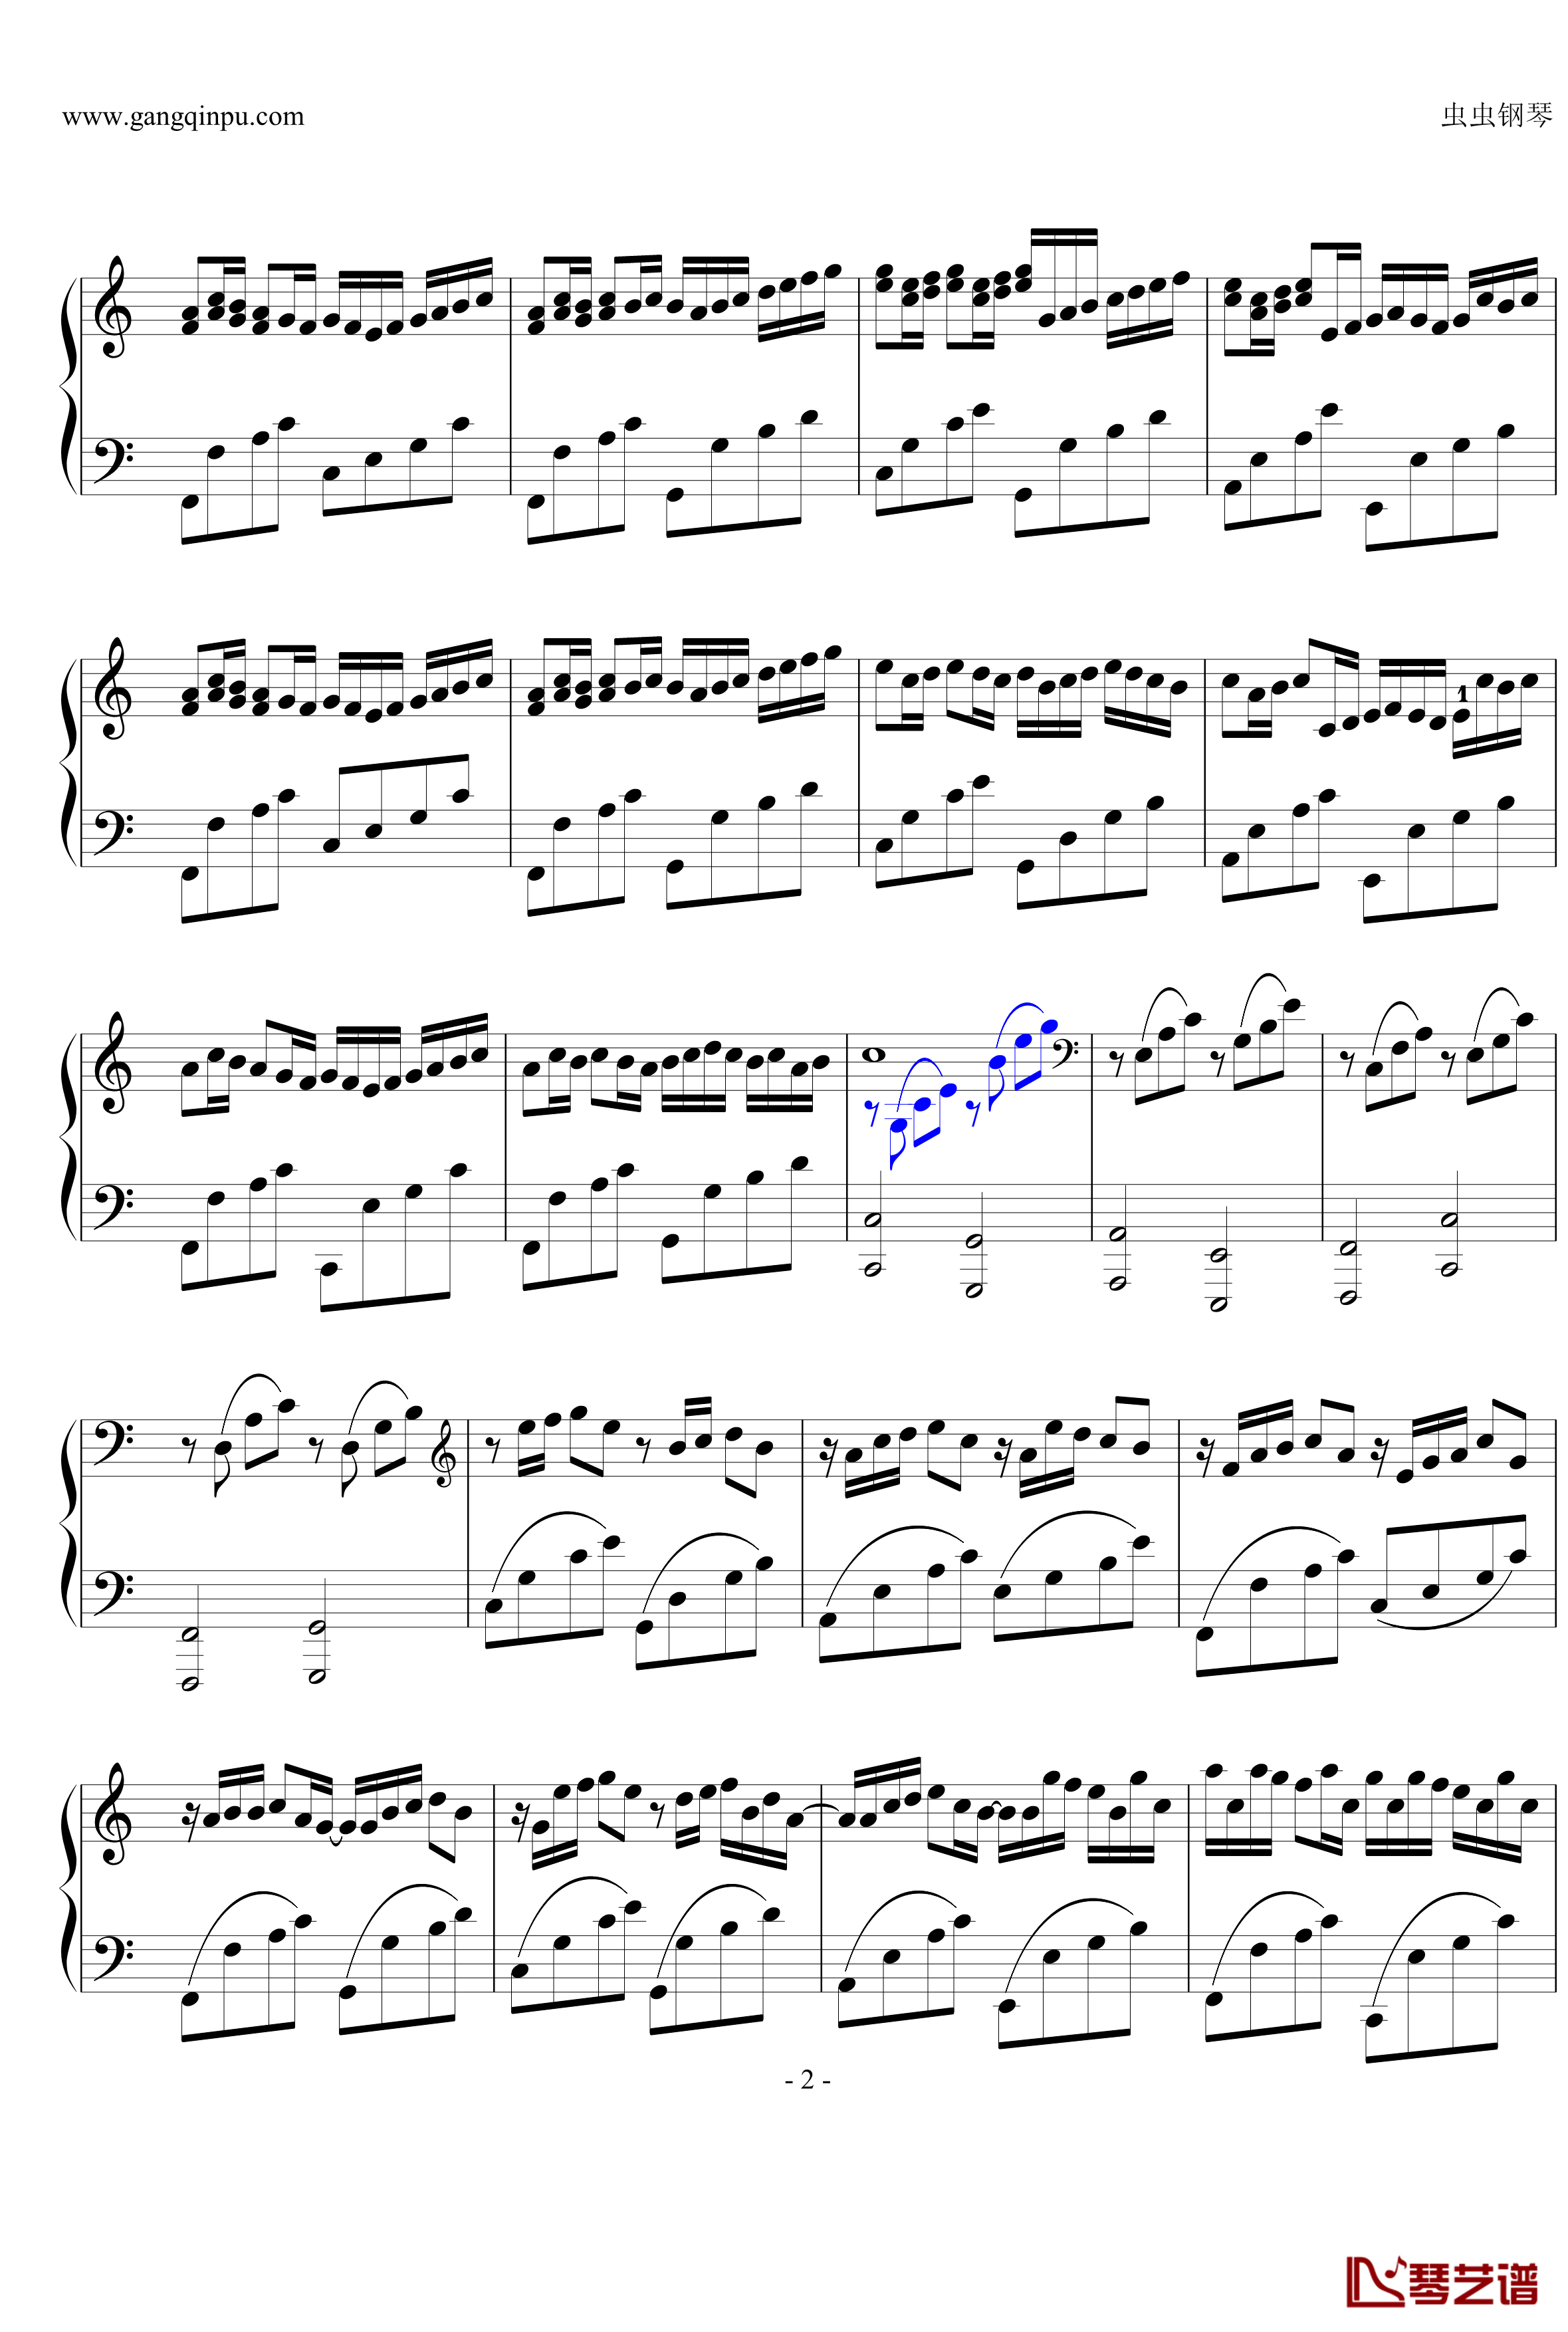 卡农钢琴谱-简化版-George Winston2